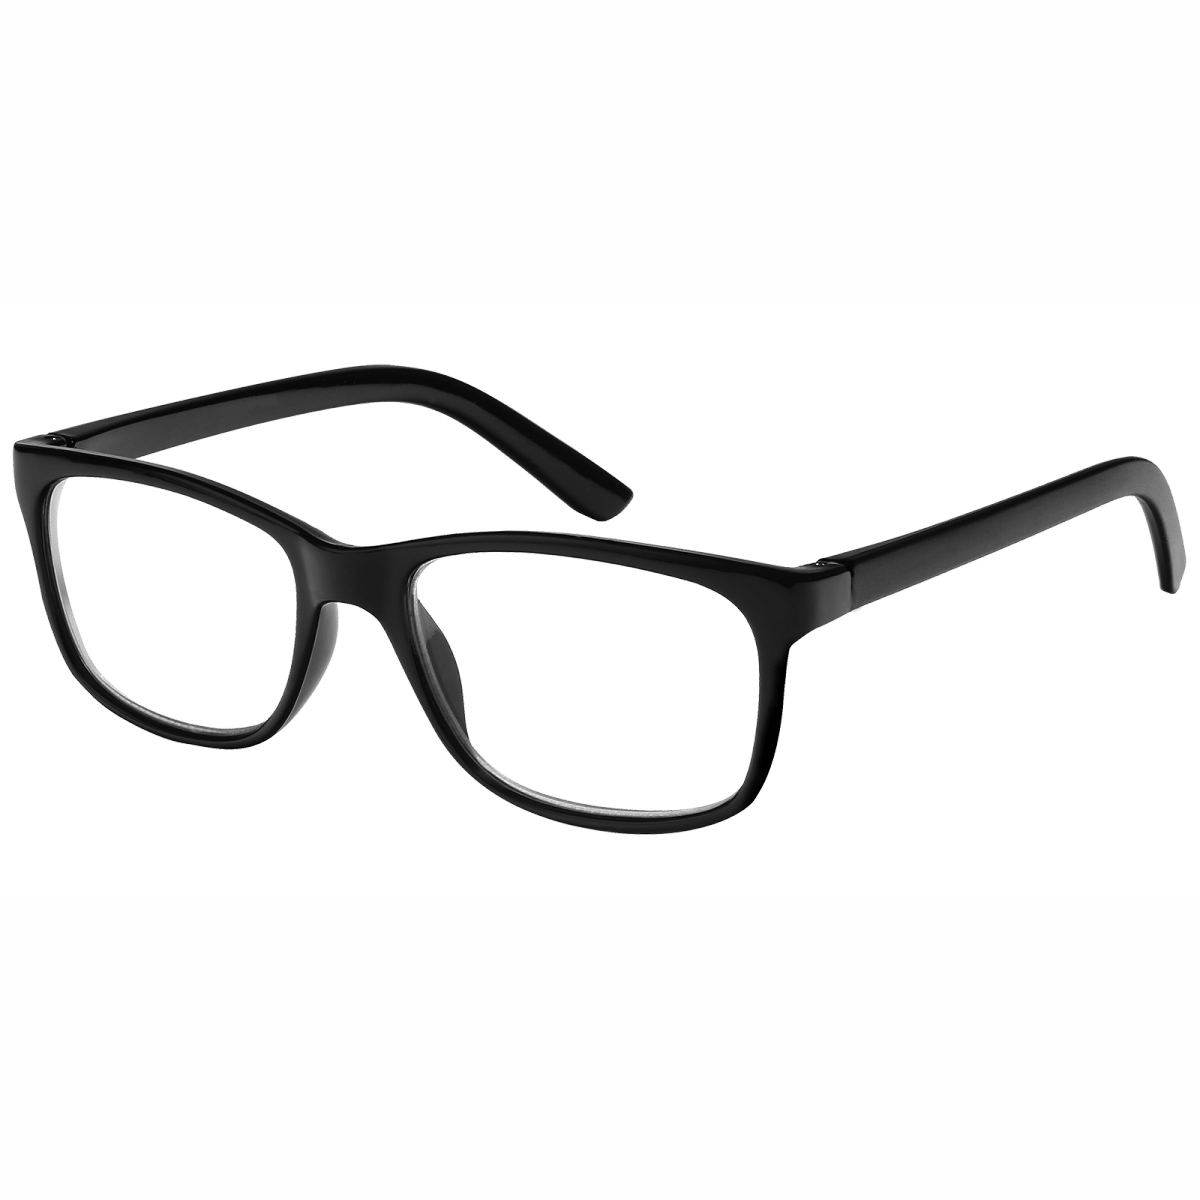 Calgary - Rectangle Black Reading Glasses for Men & Women